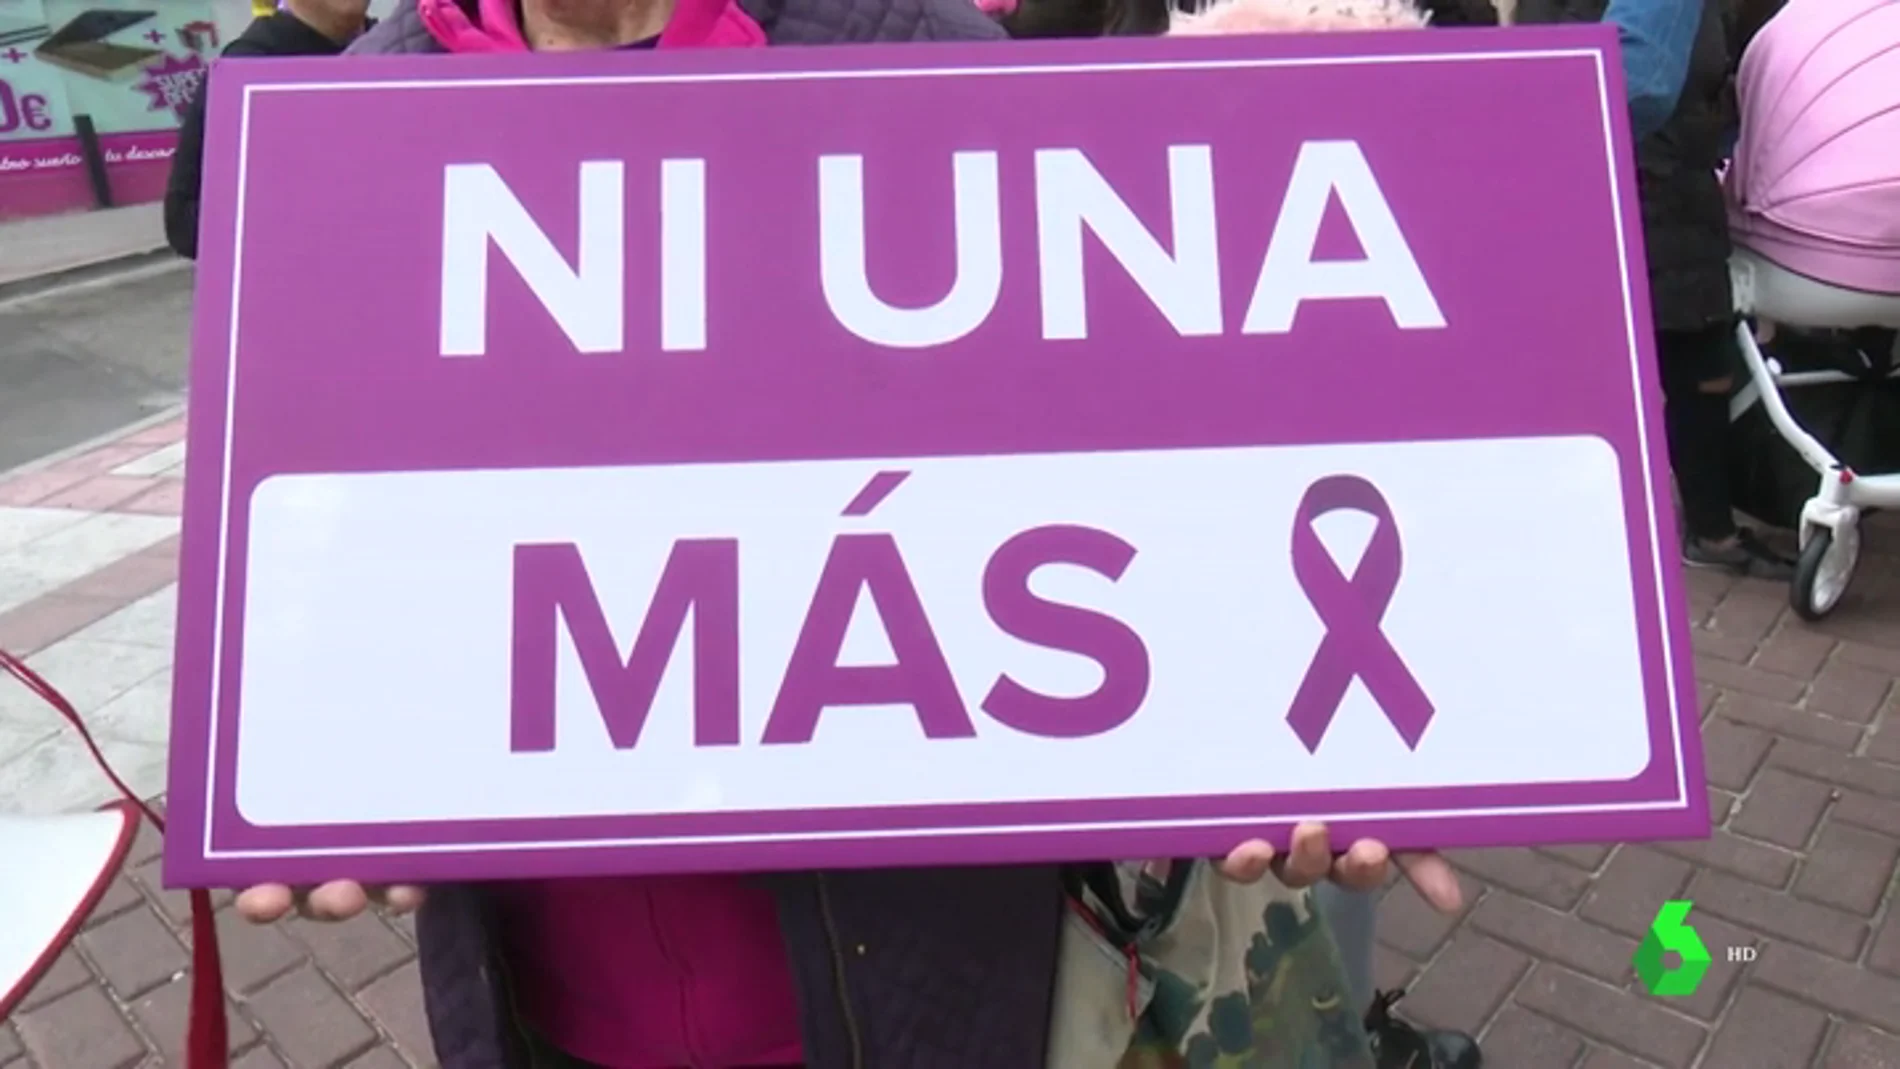 ¿Qué datos de los trabajadores de violencia de género ha dado la Junta de Andalucía a Vox?